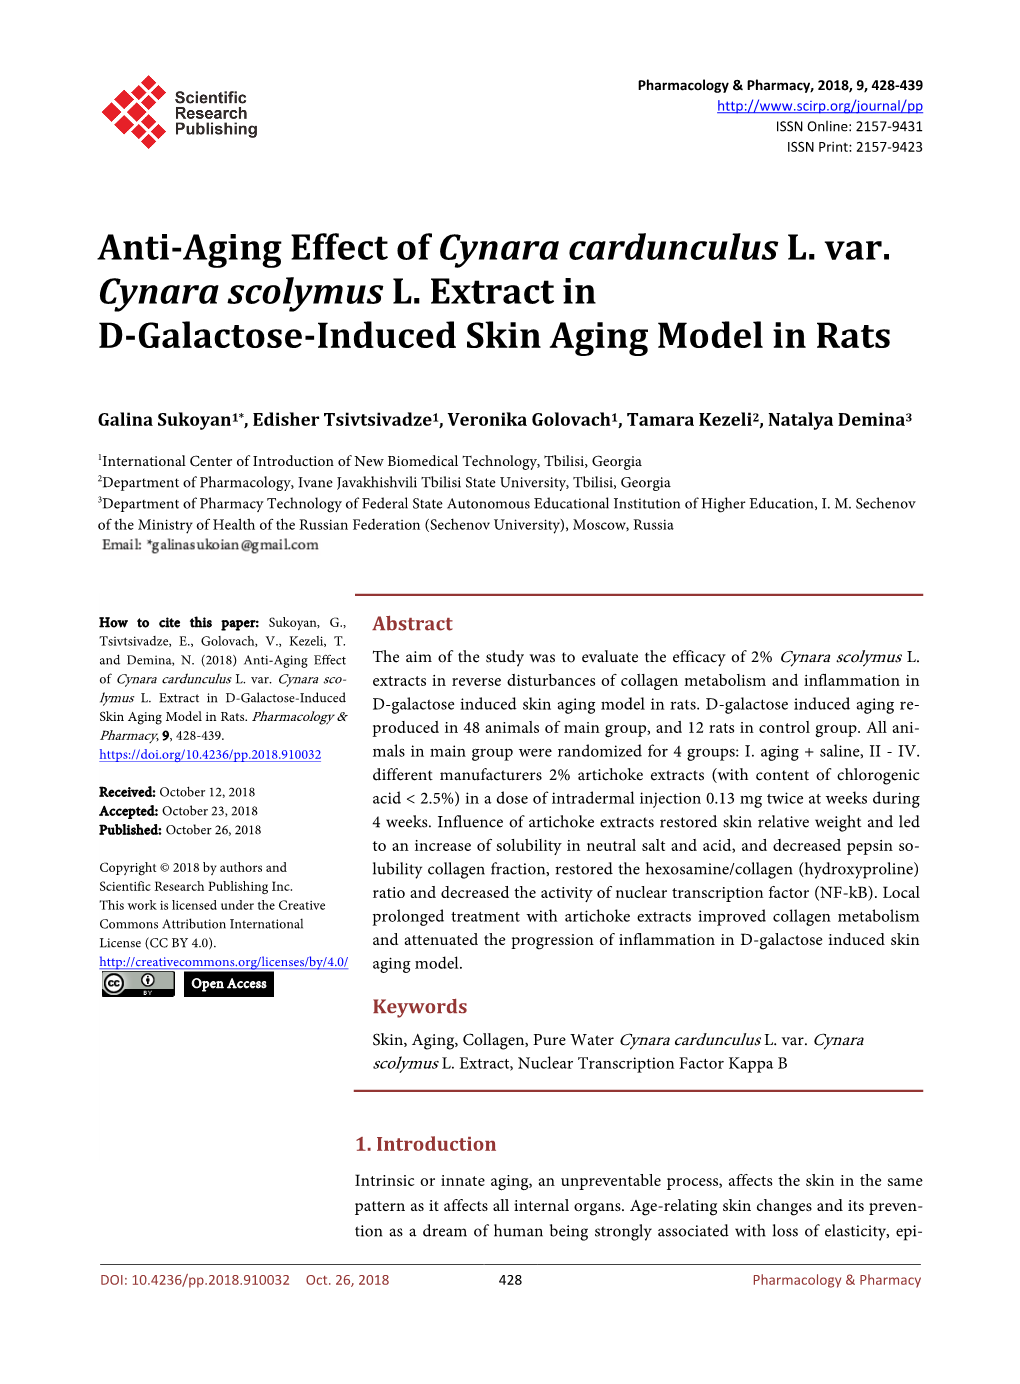 Anti-Aging Effect of Cynara Cardunculus L. Var. Cynara Scolymus L